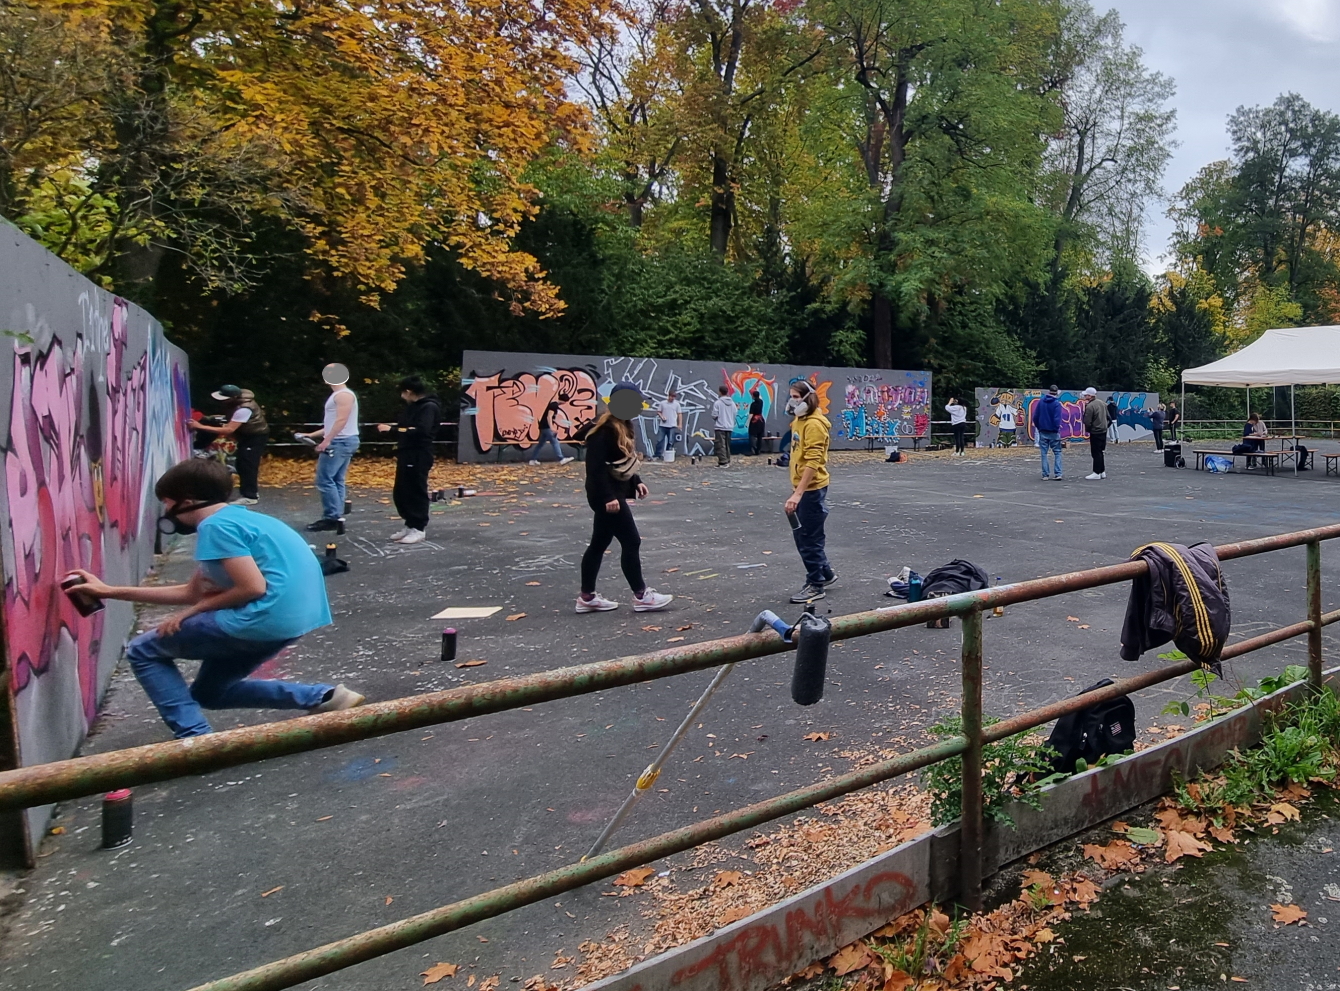 Jugendliche besprühen Graffiti-Wände in Park